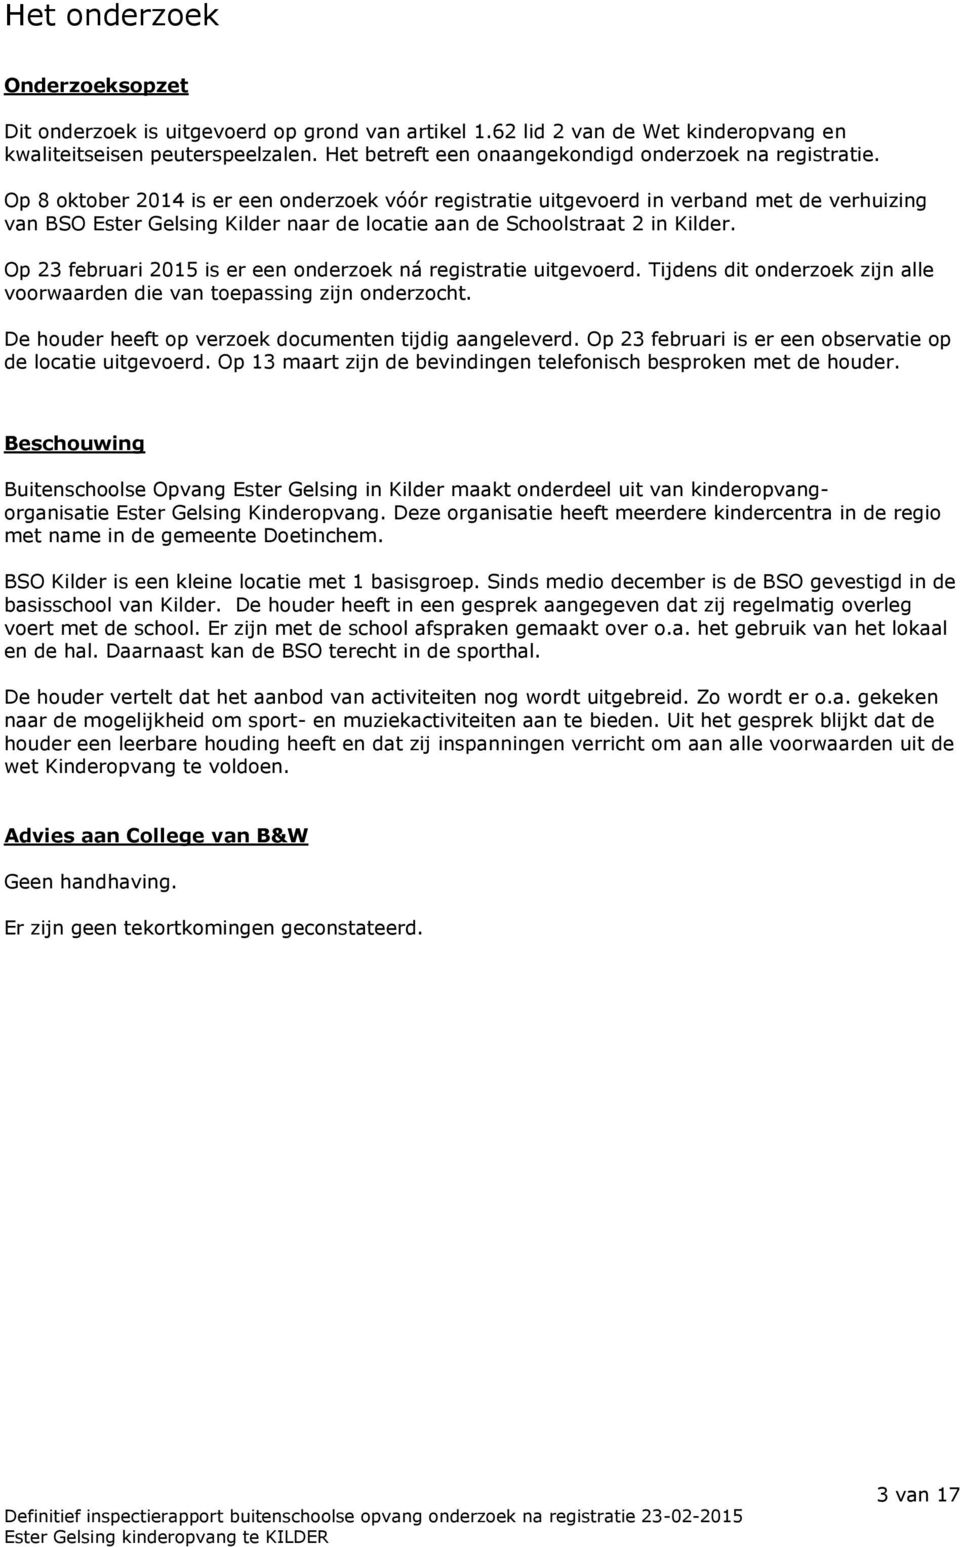 Op 8 oktober 2014 is er een onderzoek vóór registratie uitgevoerd in verband met de verhuizing van BSO Ester Gelsing Kilder naar de locatie aan de Schoolstraat 2 in Kilder.